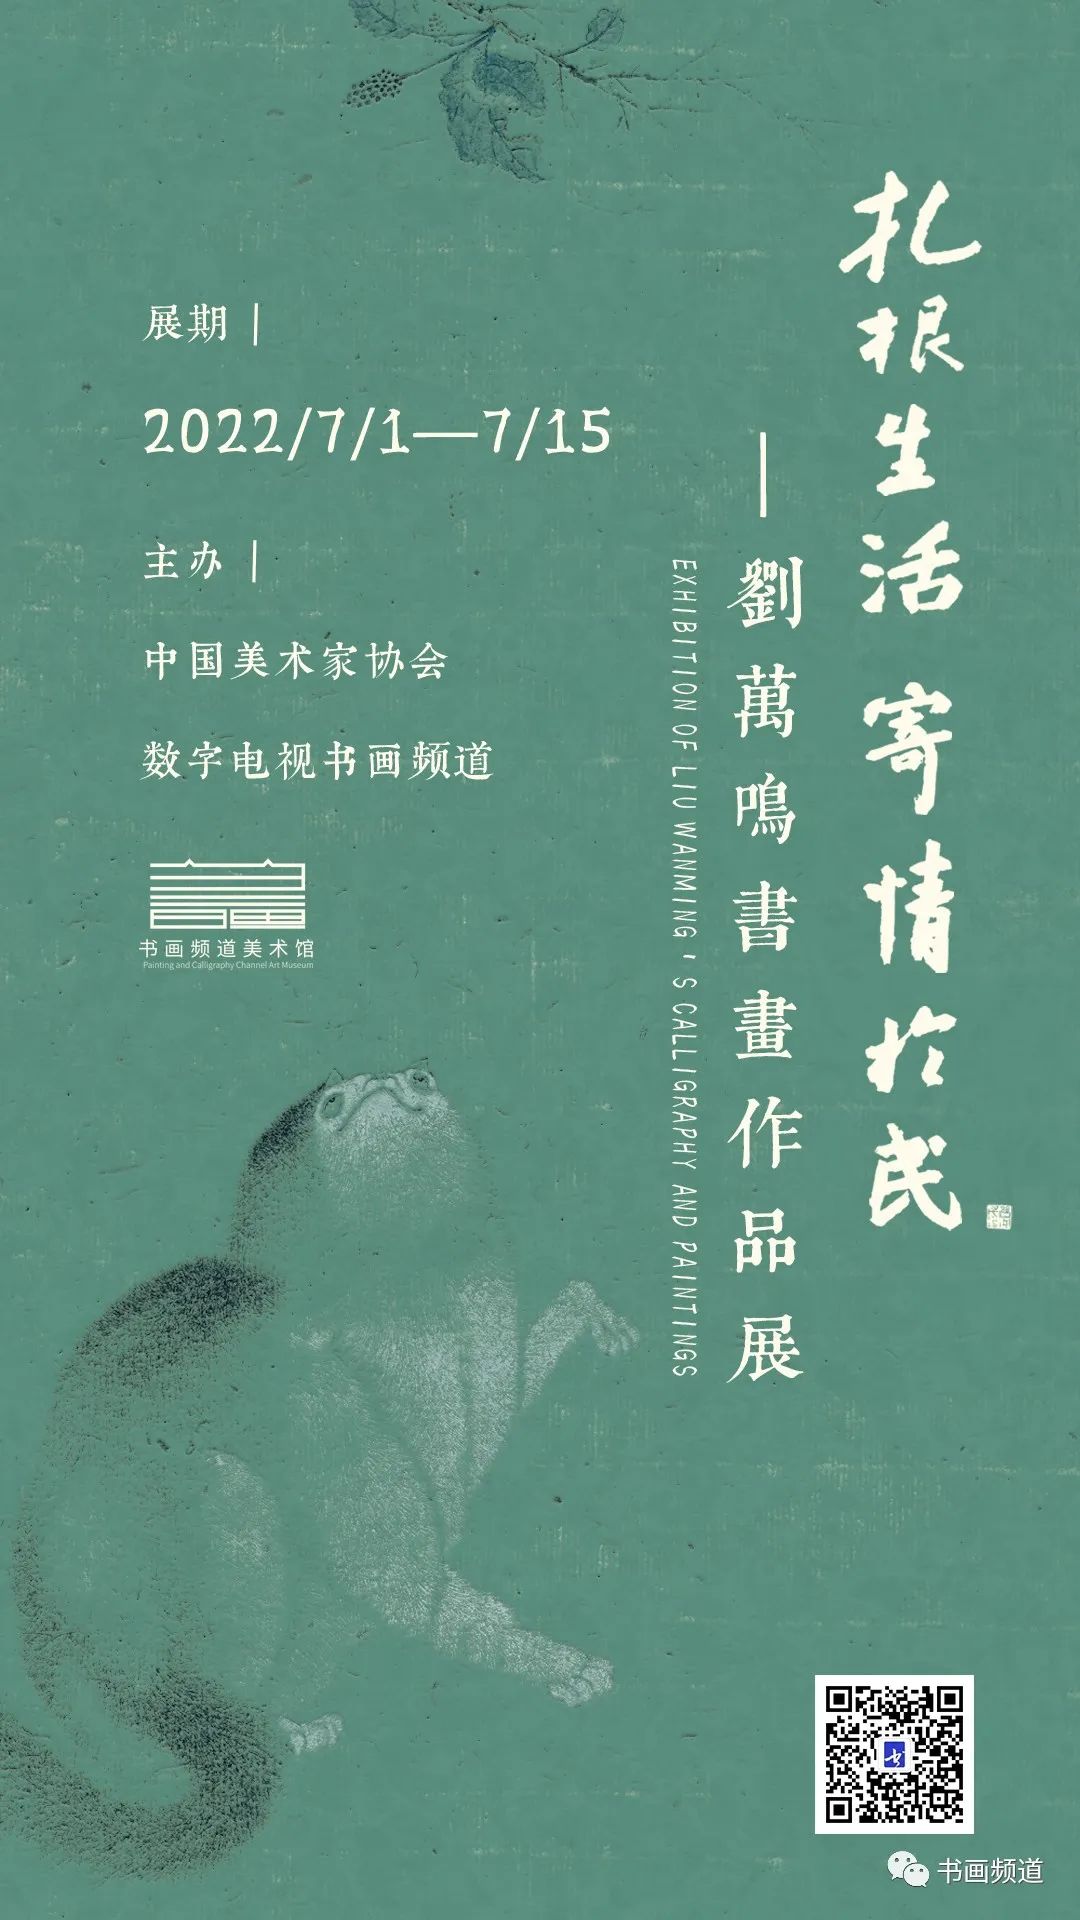 “扎根生活 寄情于民——刘万鸣书画作品展”将于明日开展